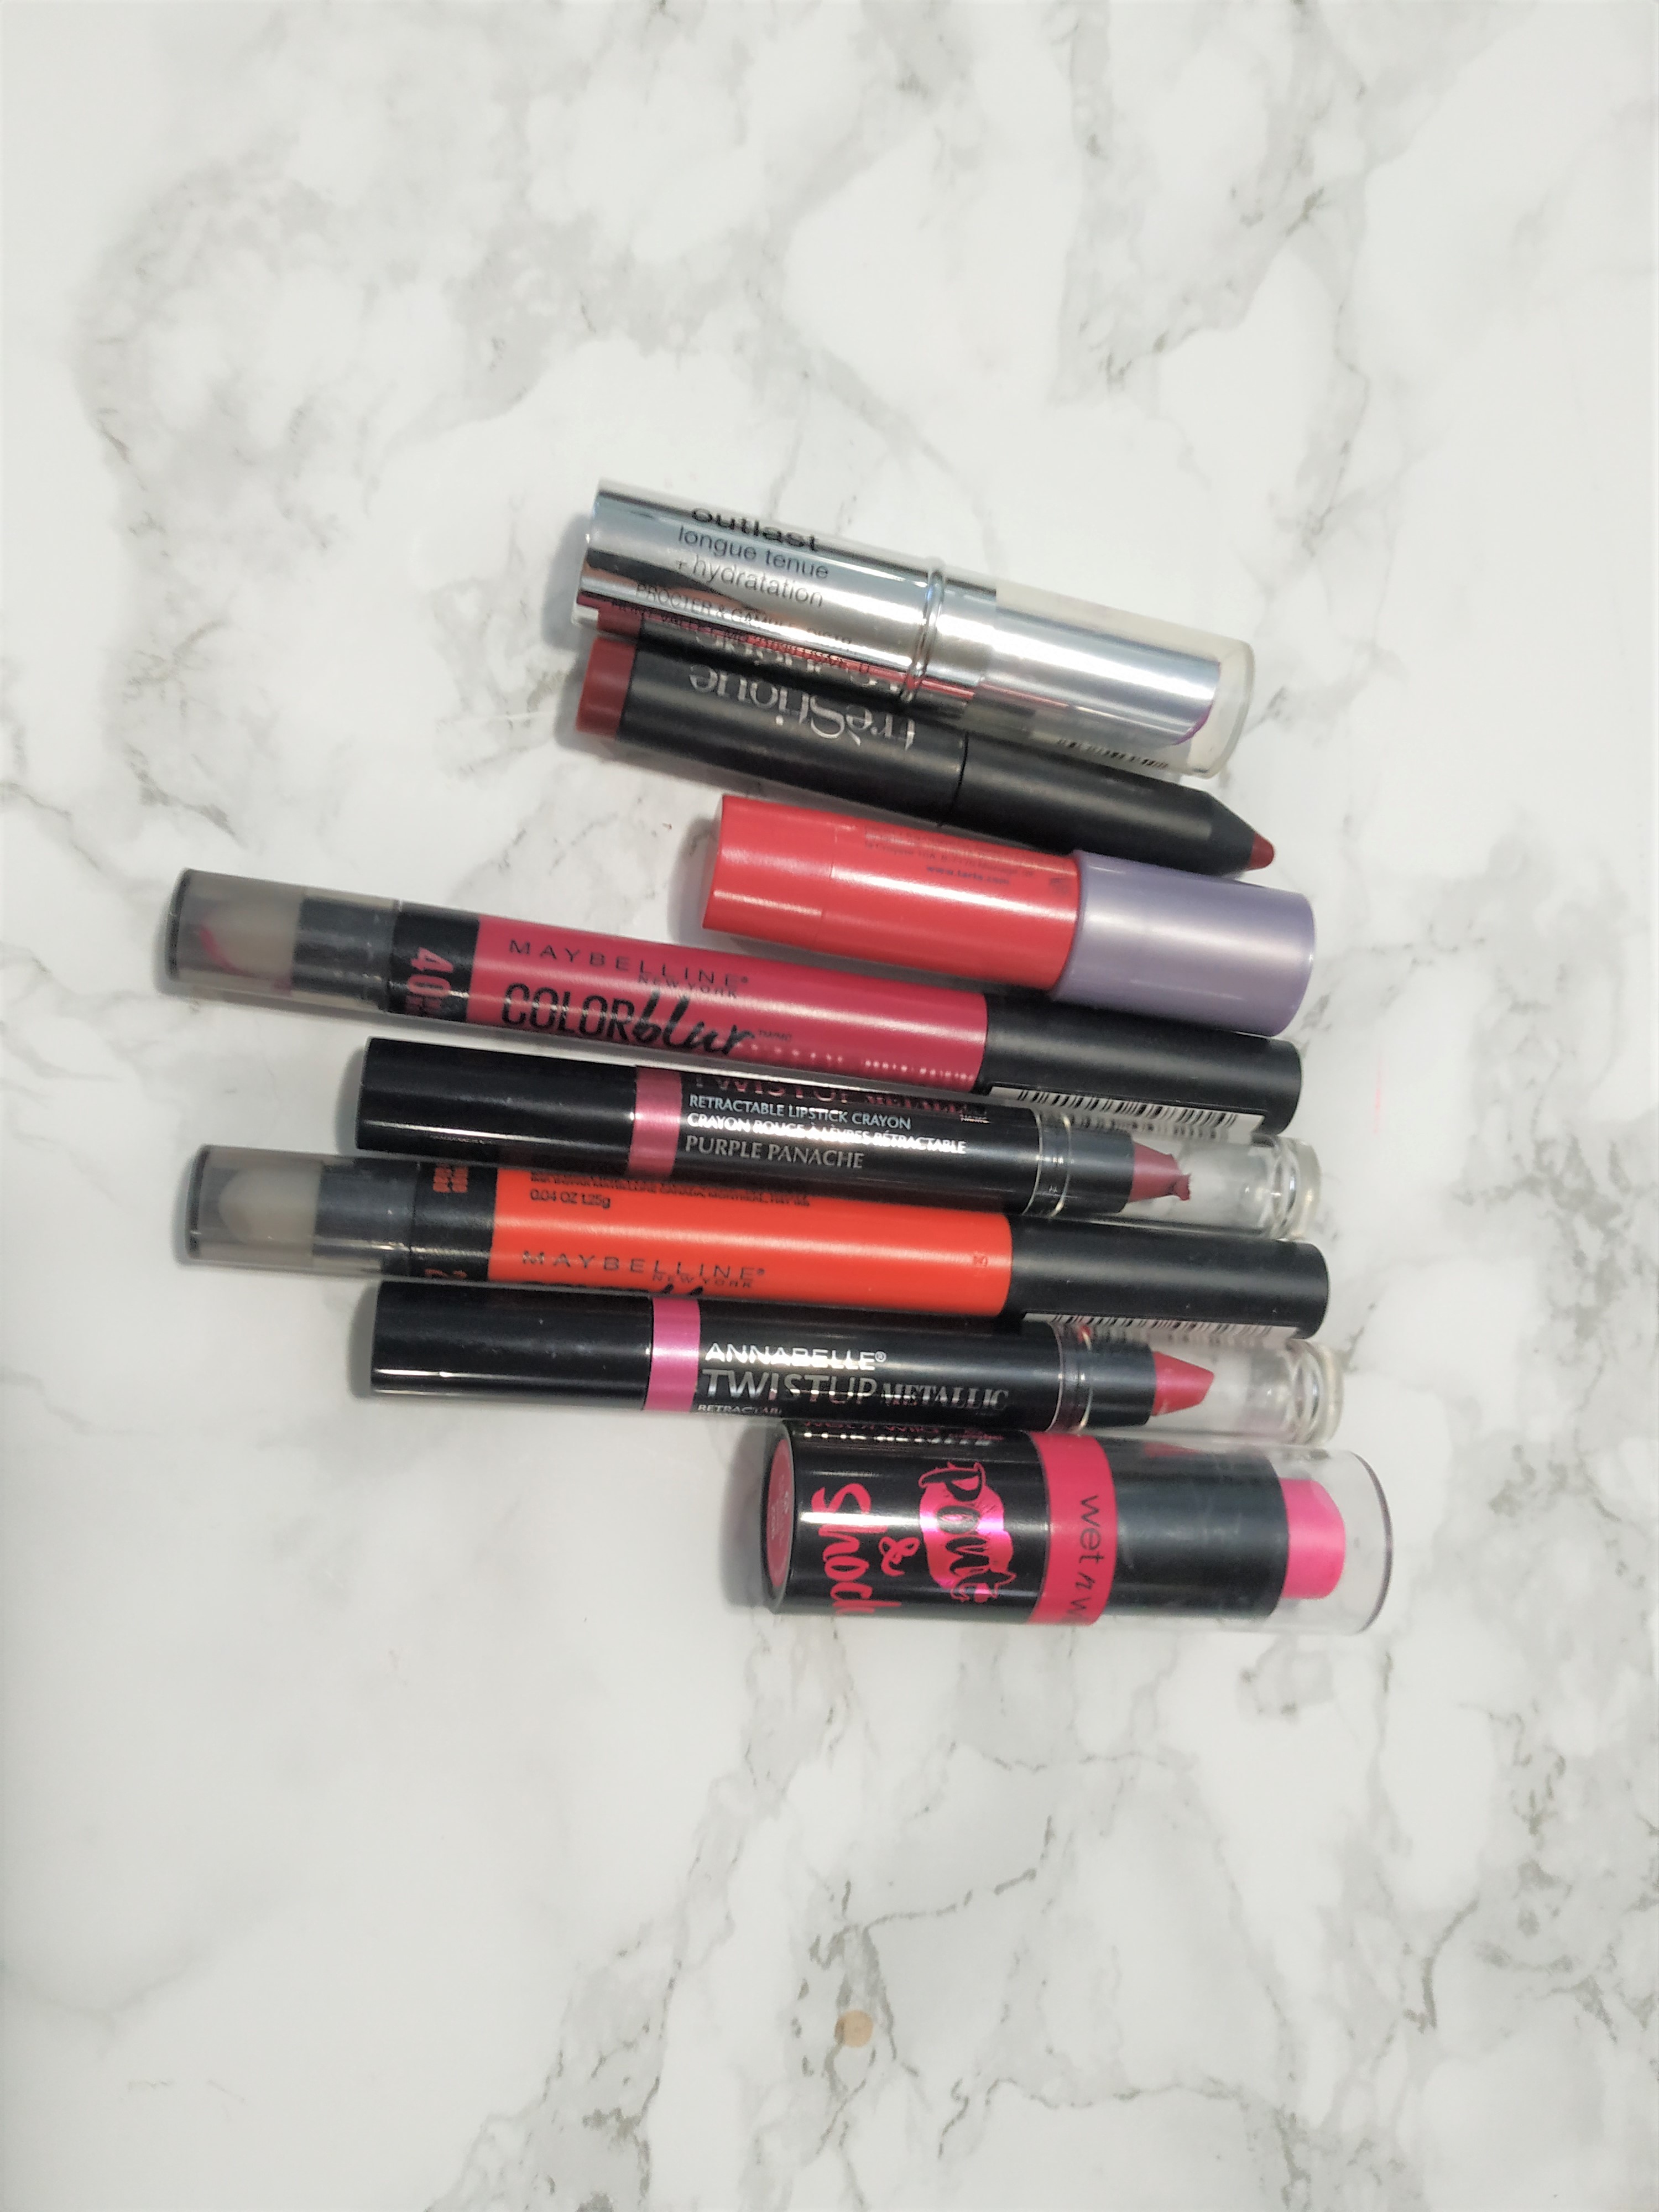 Lipsticks in different shades.